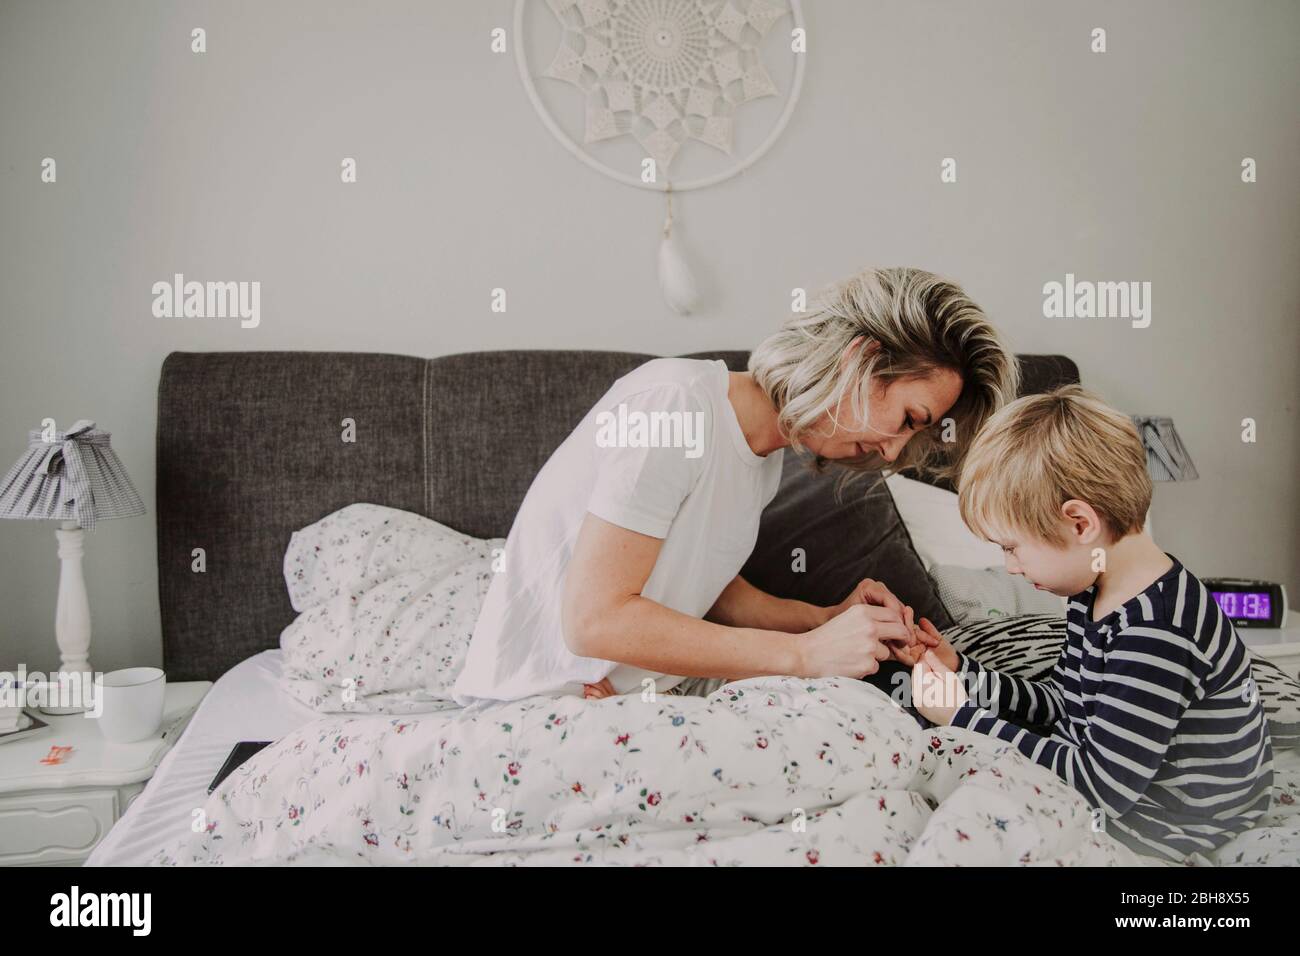 Morgens im Bett, Mutter verarztet Wunde am Finger ihres Sohnes Foto Stock